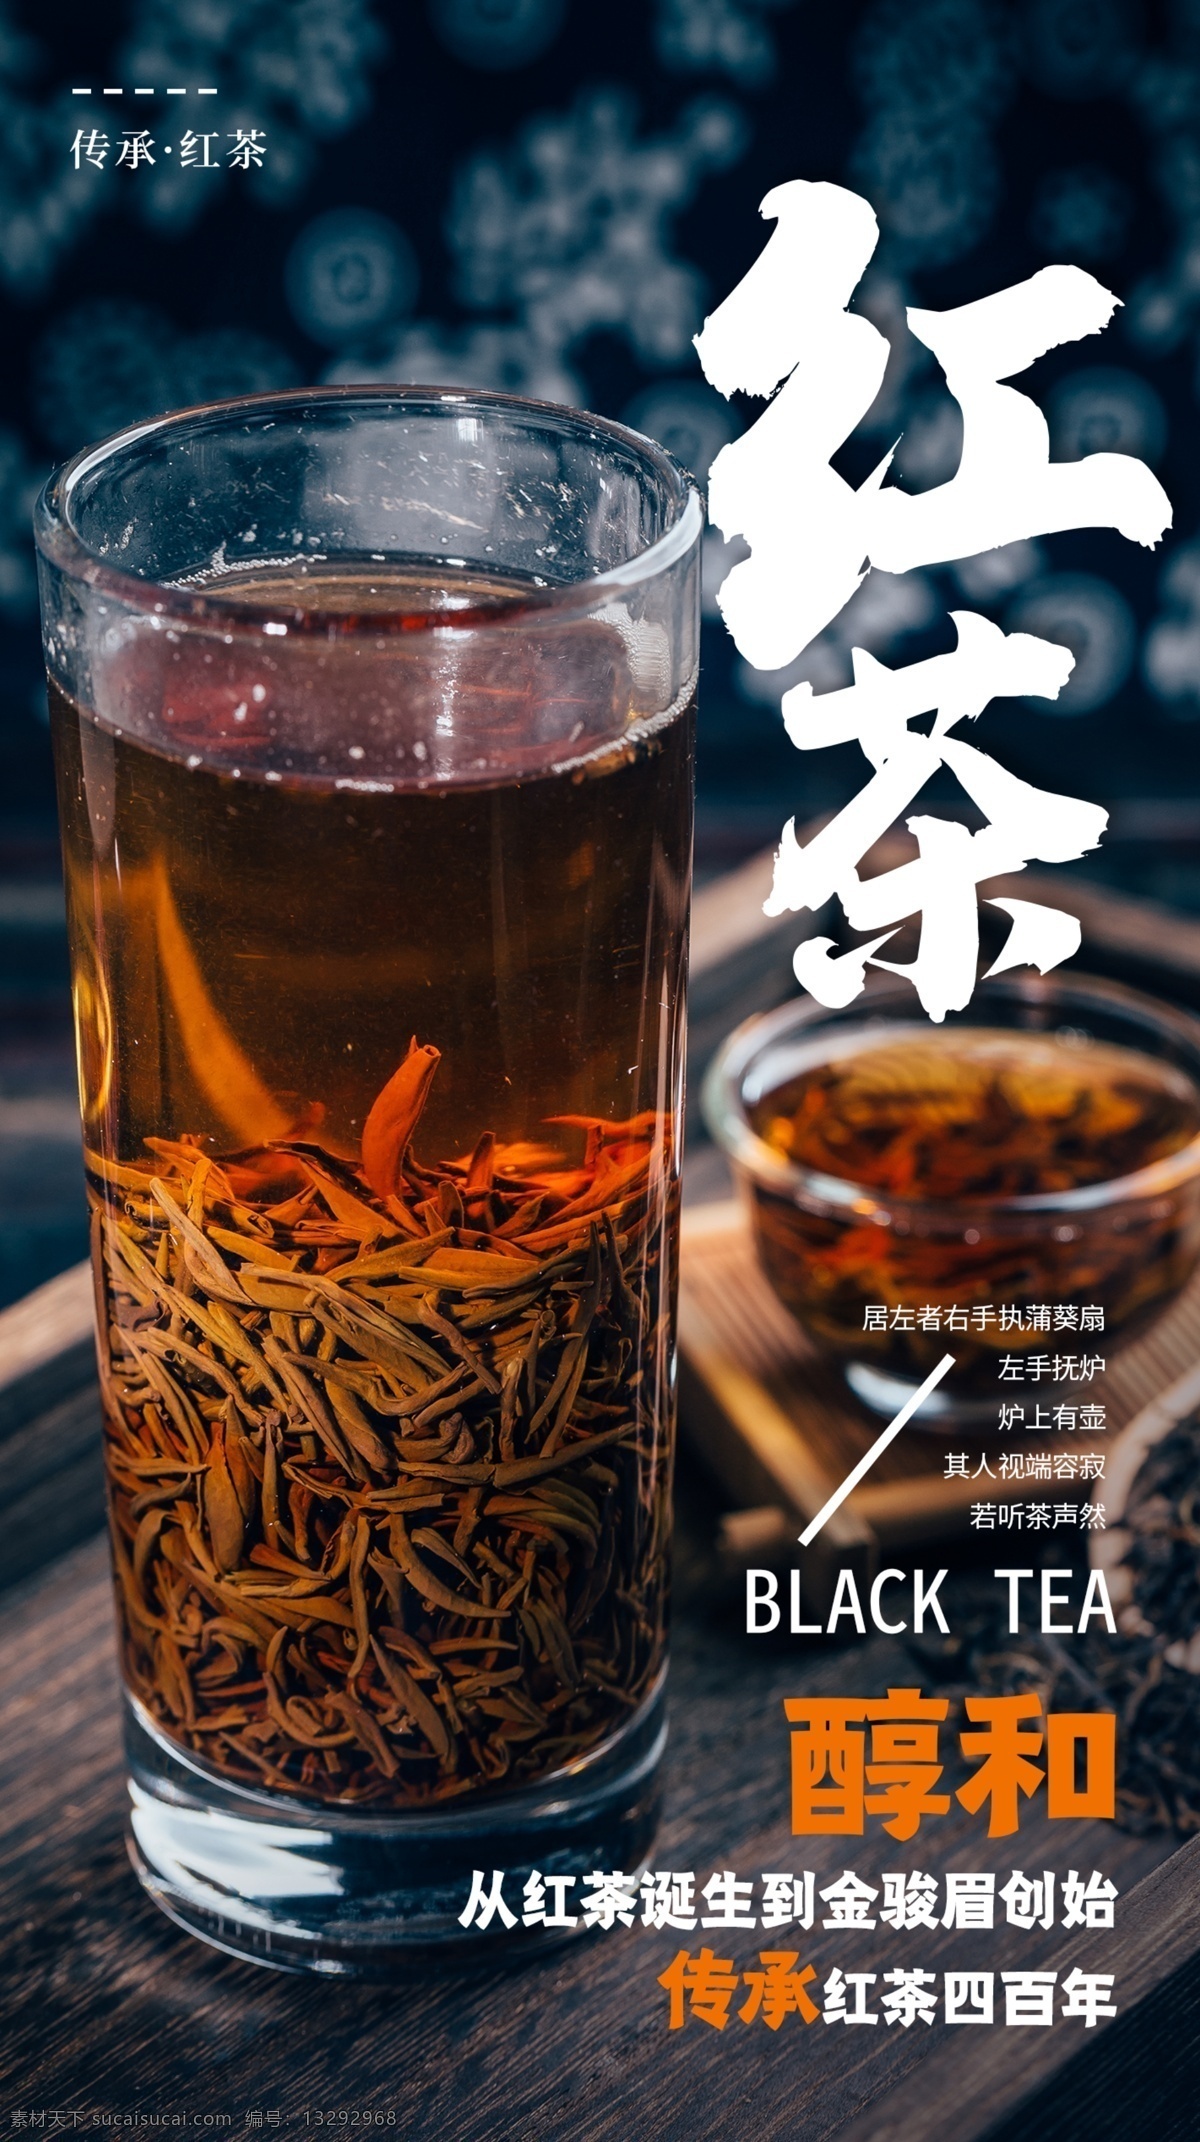 红茶 饮品 饮料 活动 海报 素材图片 甜品 类